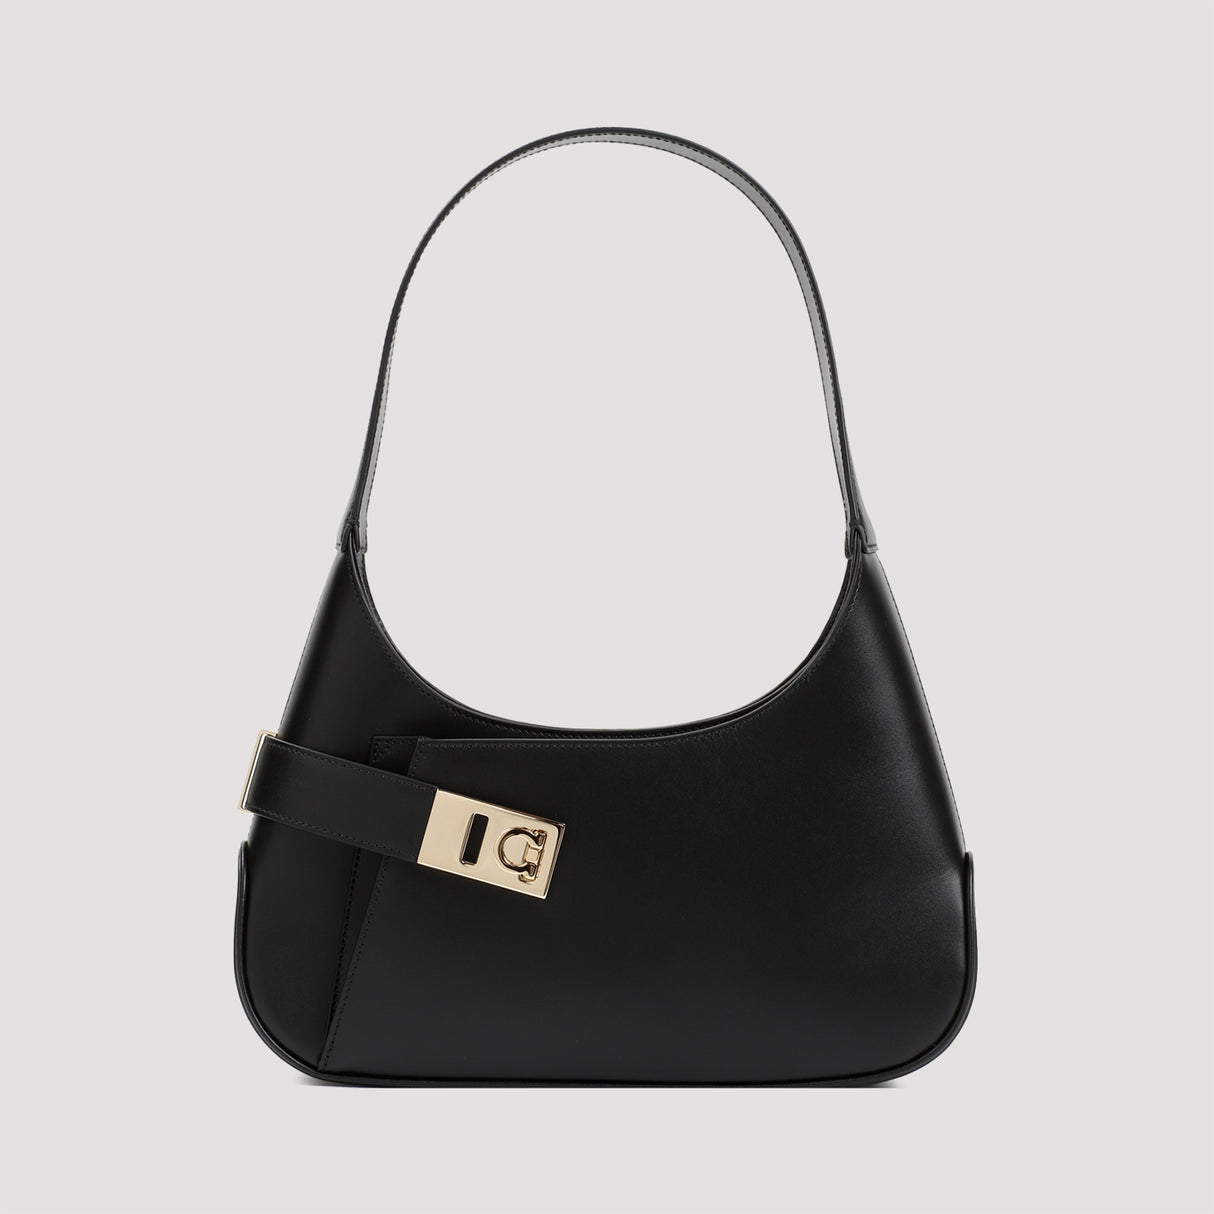 حقيبة جلدية سوداء للنساء - مجموعة SS24